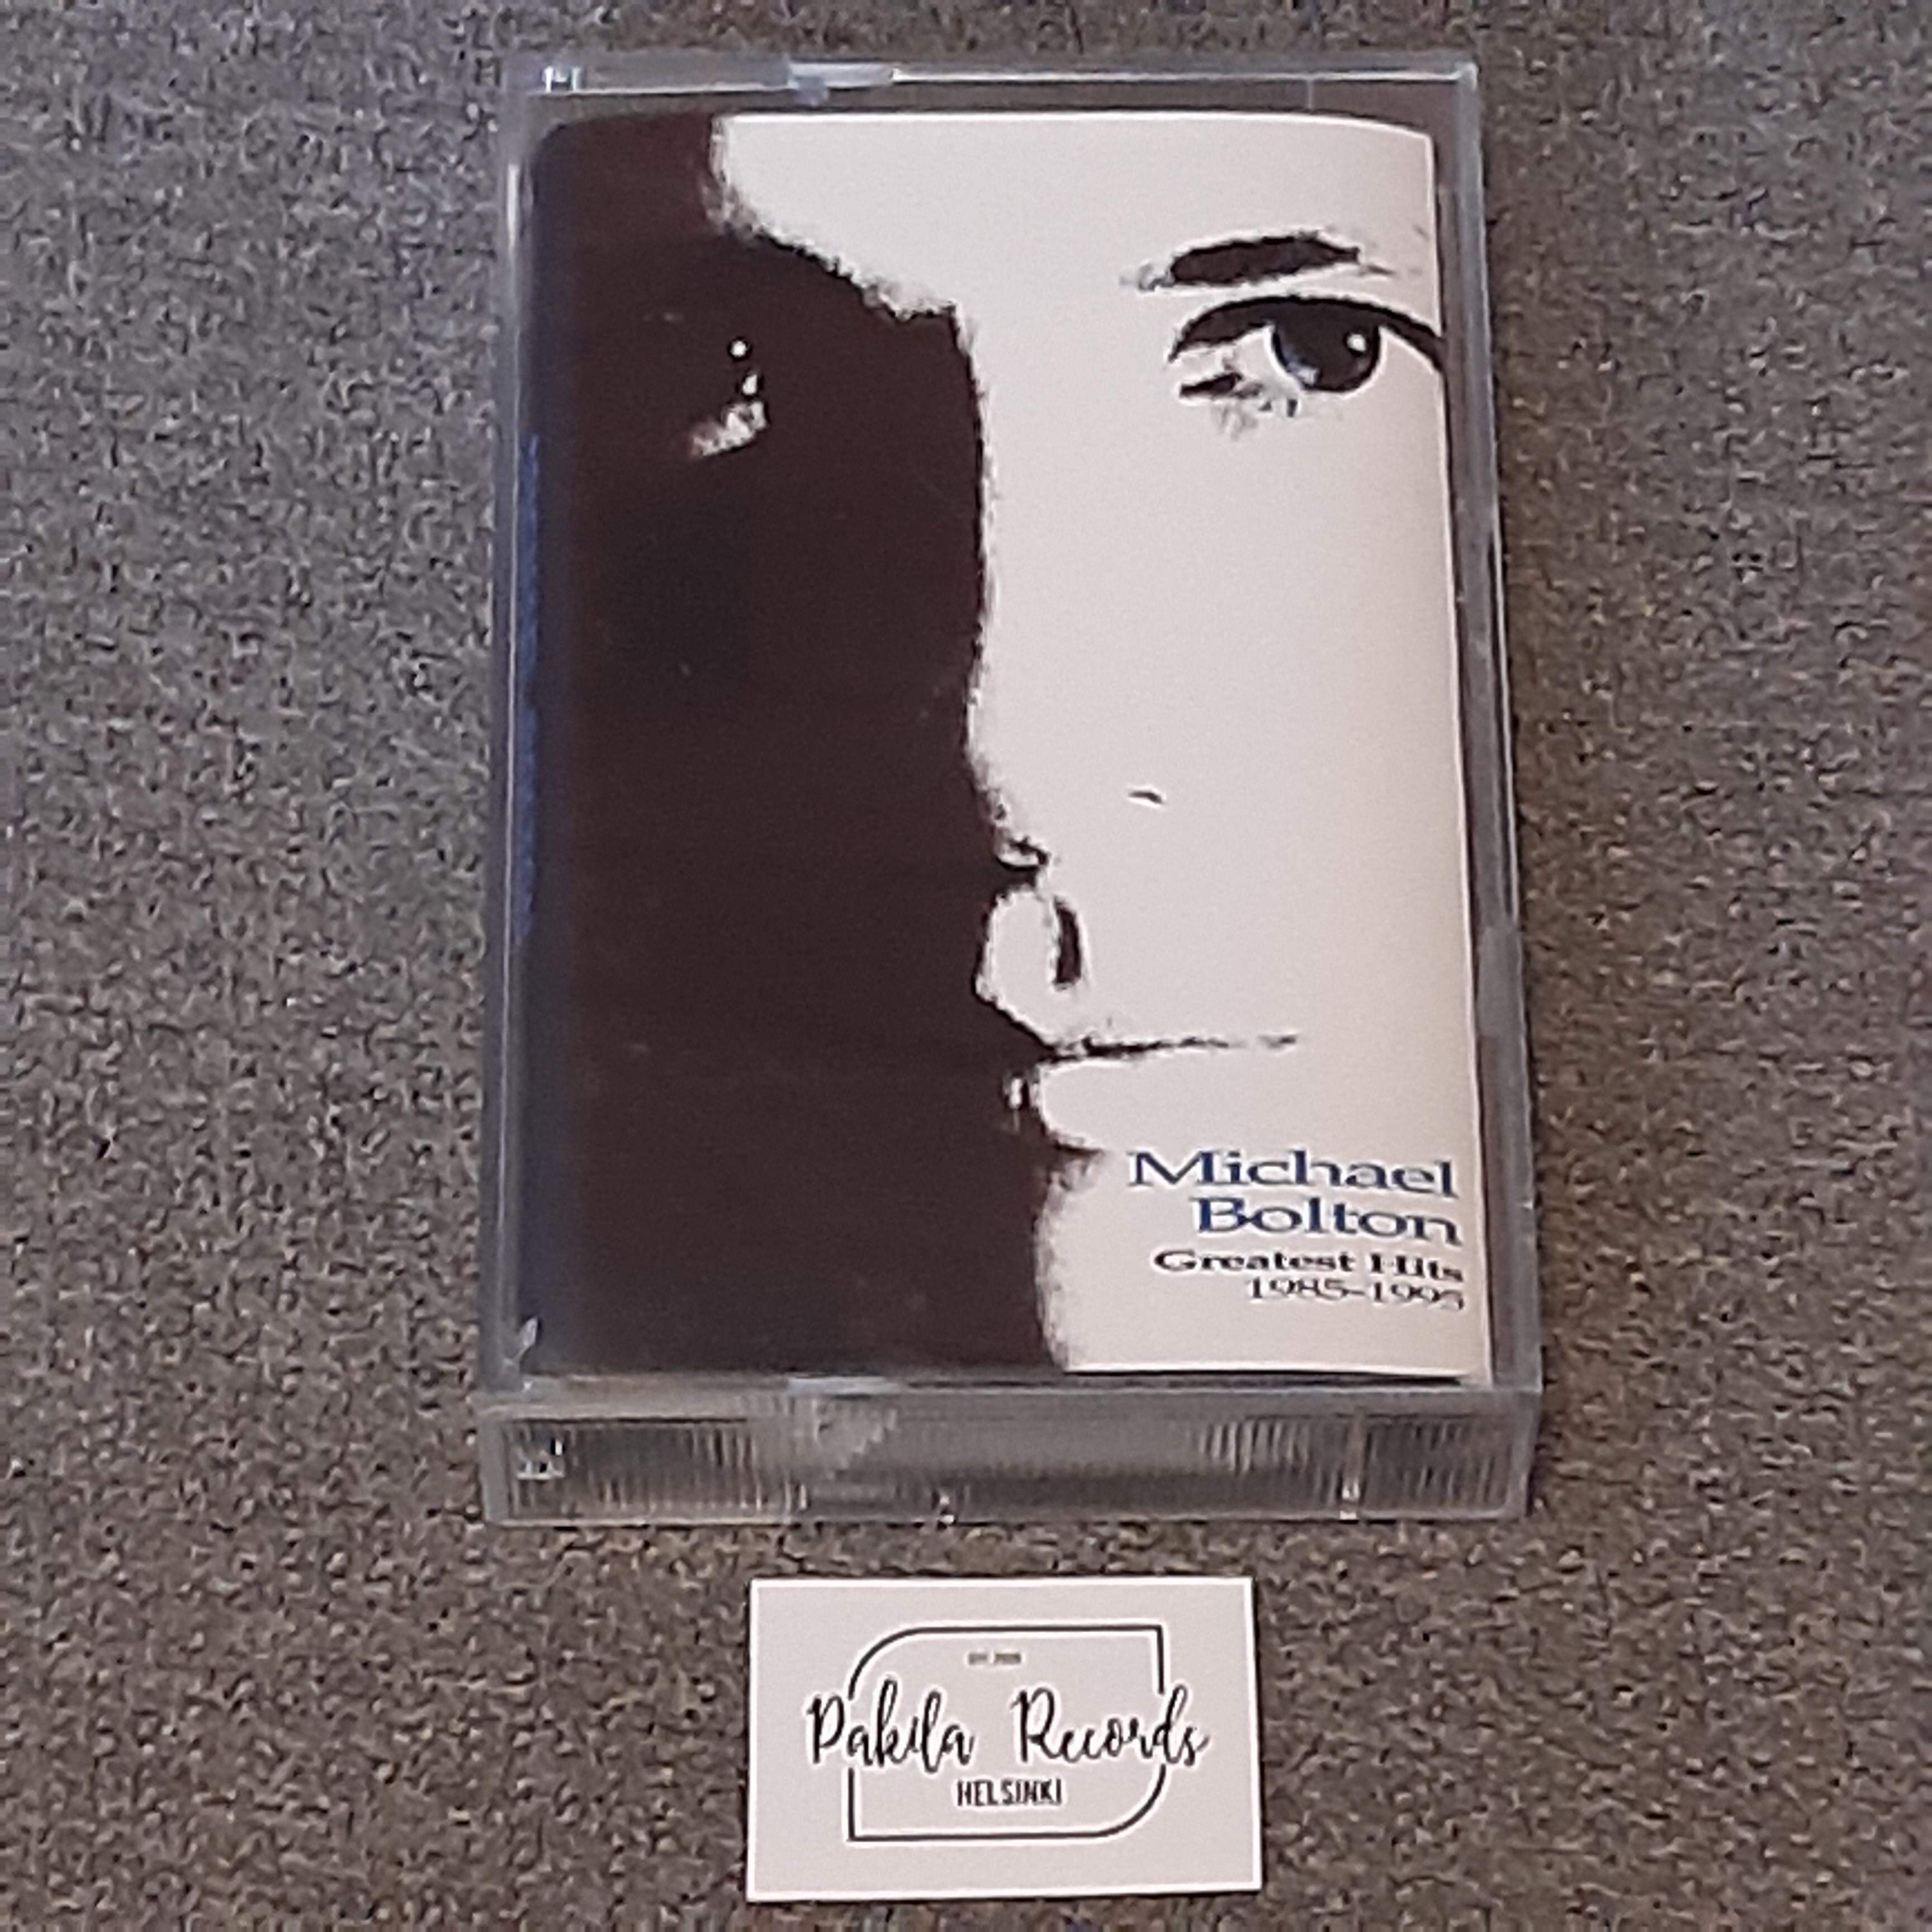 Michael Bolton - Greatest Hits 1985-1995 - Kasetti (käytetty)